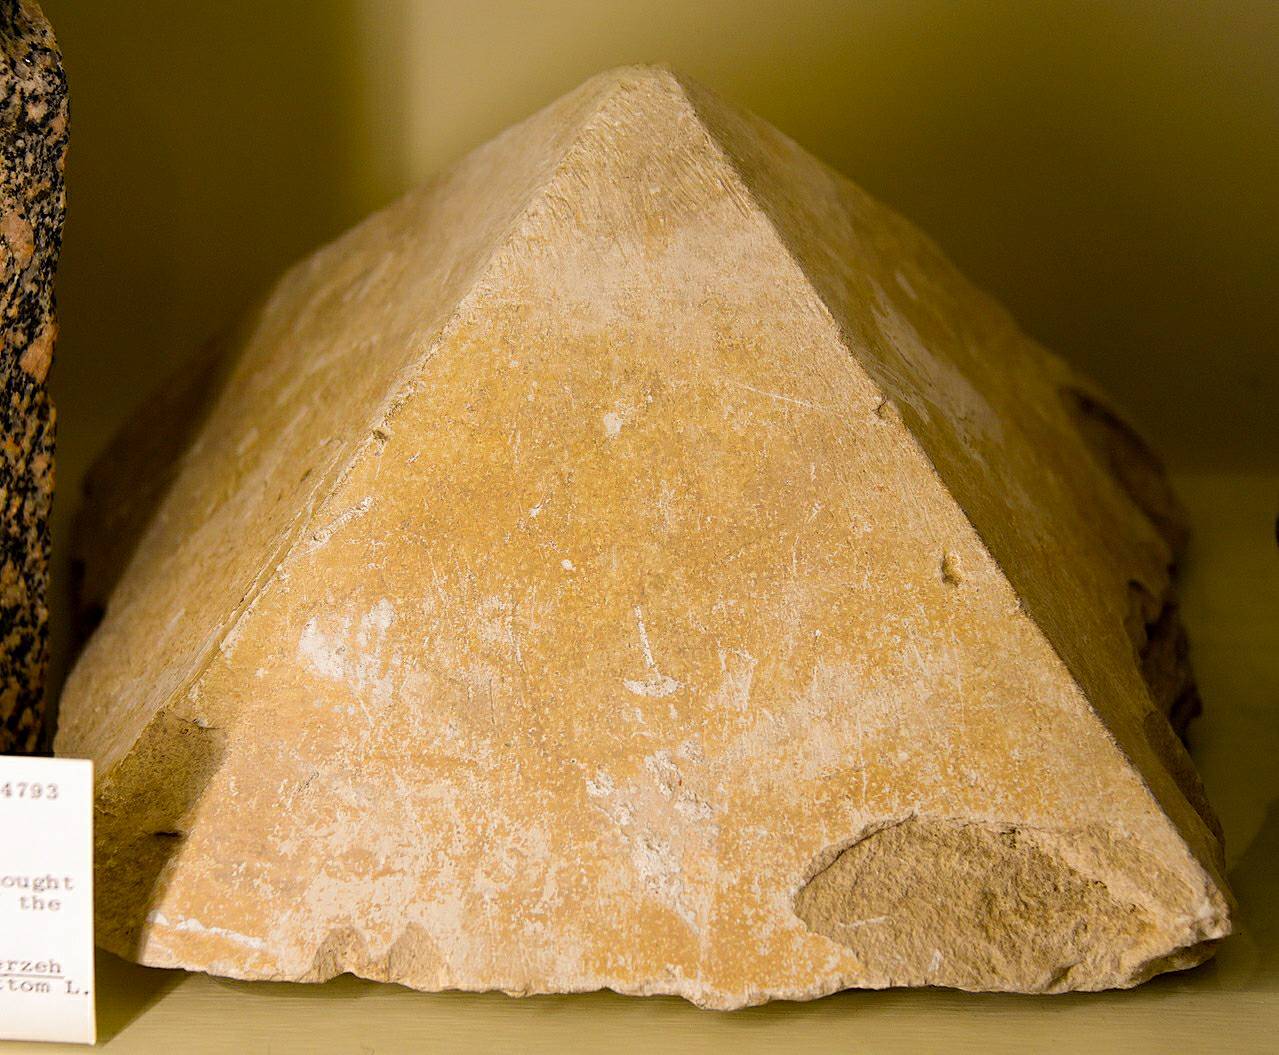 Kalkakmenio piramidė. Seras Flindersas Petrie manė, kad tai yra Havaros piramidės modelis. Buvo pasiūlyta didžiulė Ptolemajų statybos programa Šedytėje, kuri yra pagrindinis iš Vidurinės Karalystės kalkakmenio kolonų ir blokų, pašalintų iš Havaros, ir dabar pamestų, tikslas.